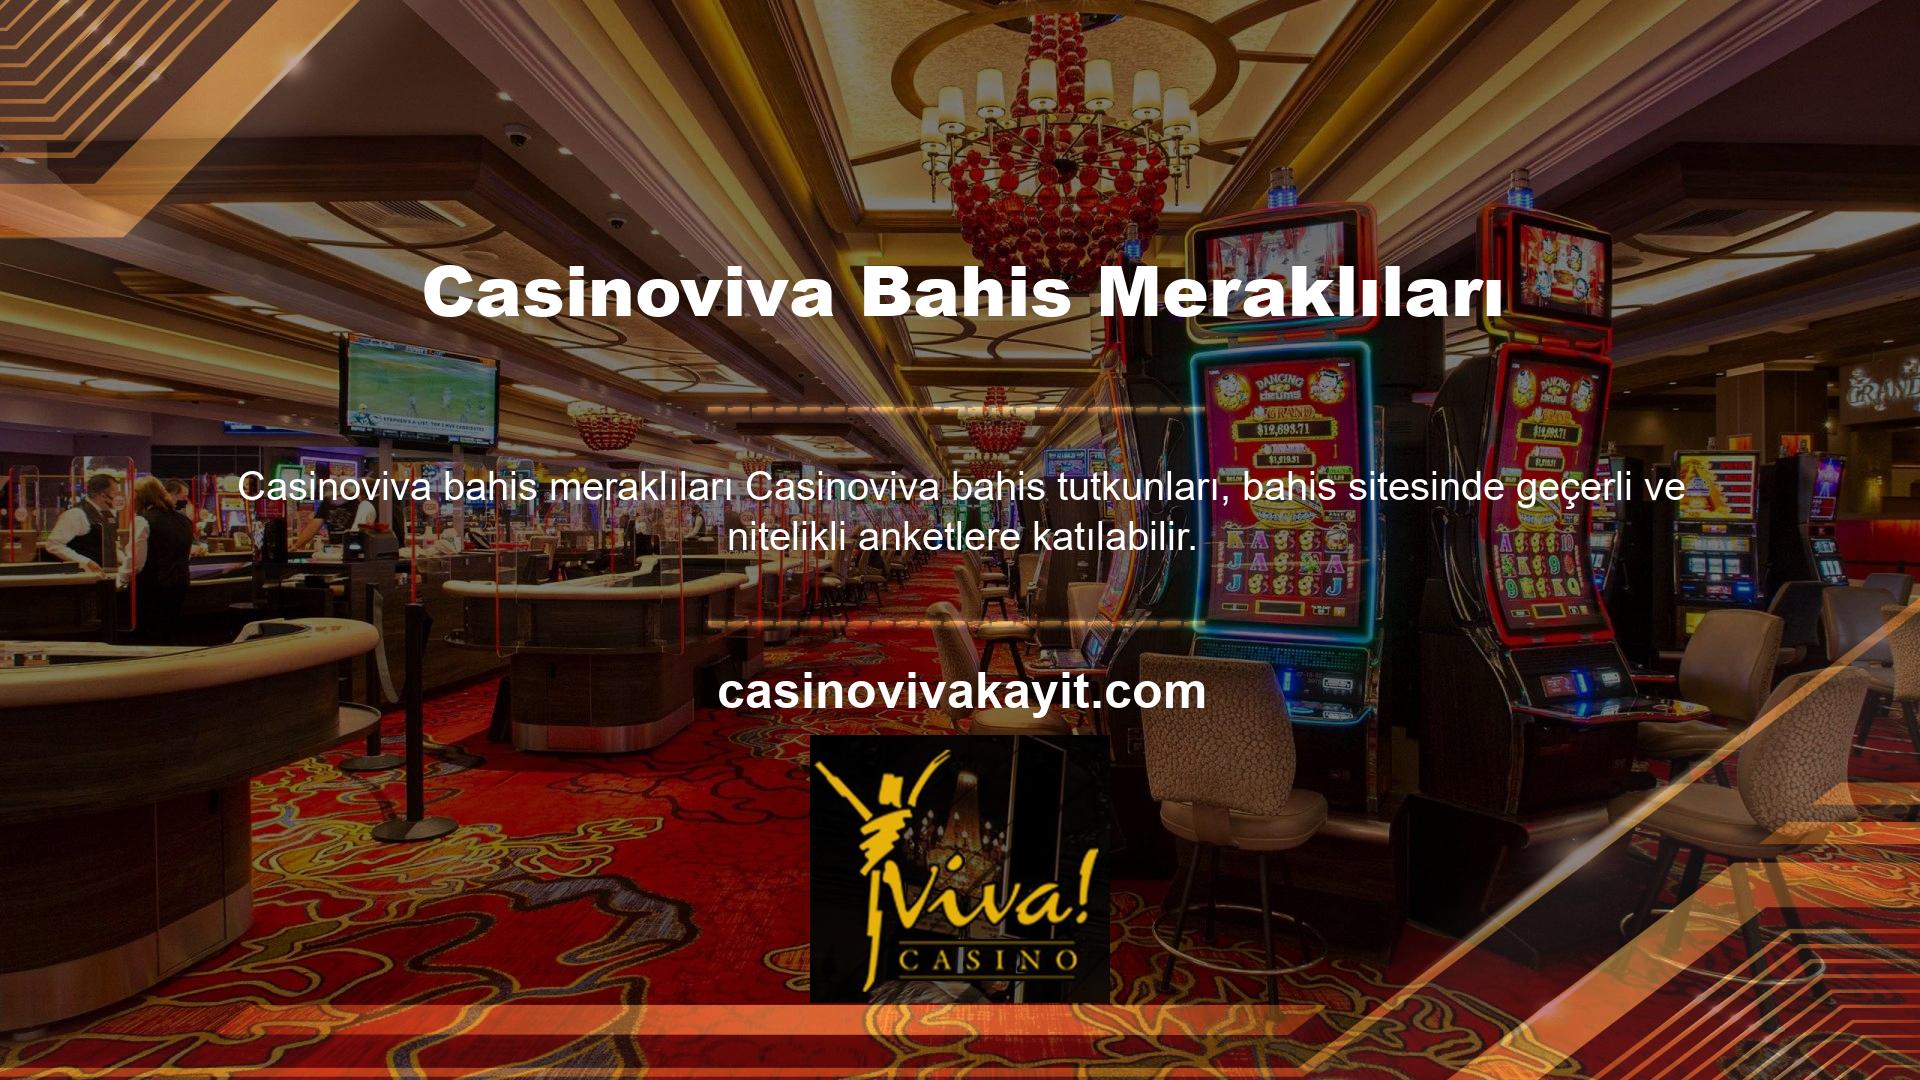 Casino tutkunları da sitenin sunduğu yüksek oranlar ile oyun bahis verimliliğini arttırabilmektedir